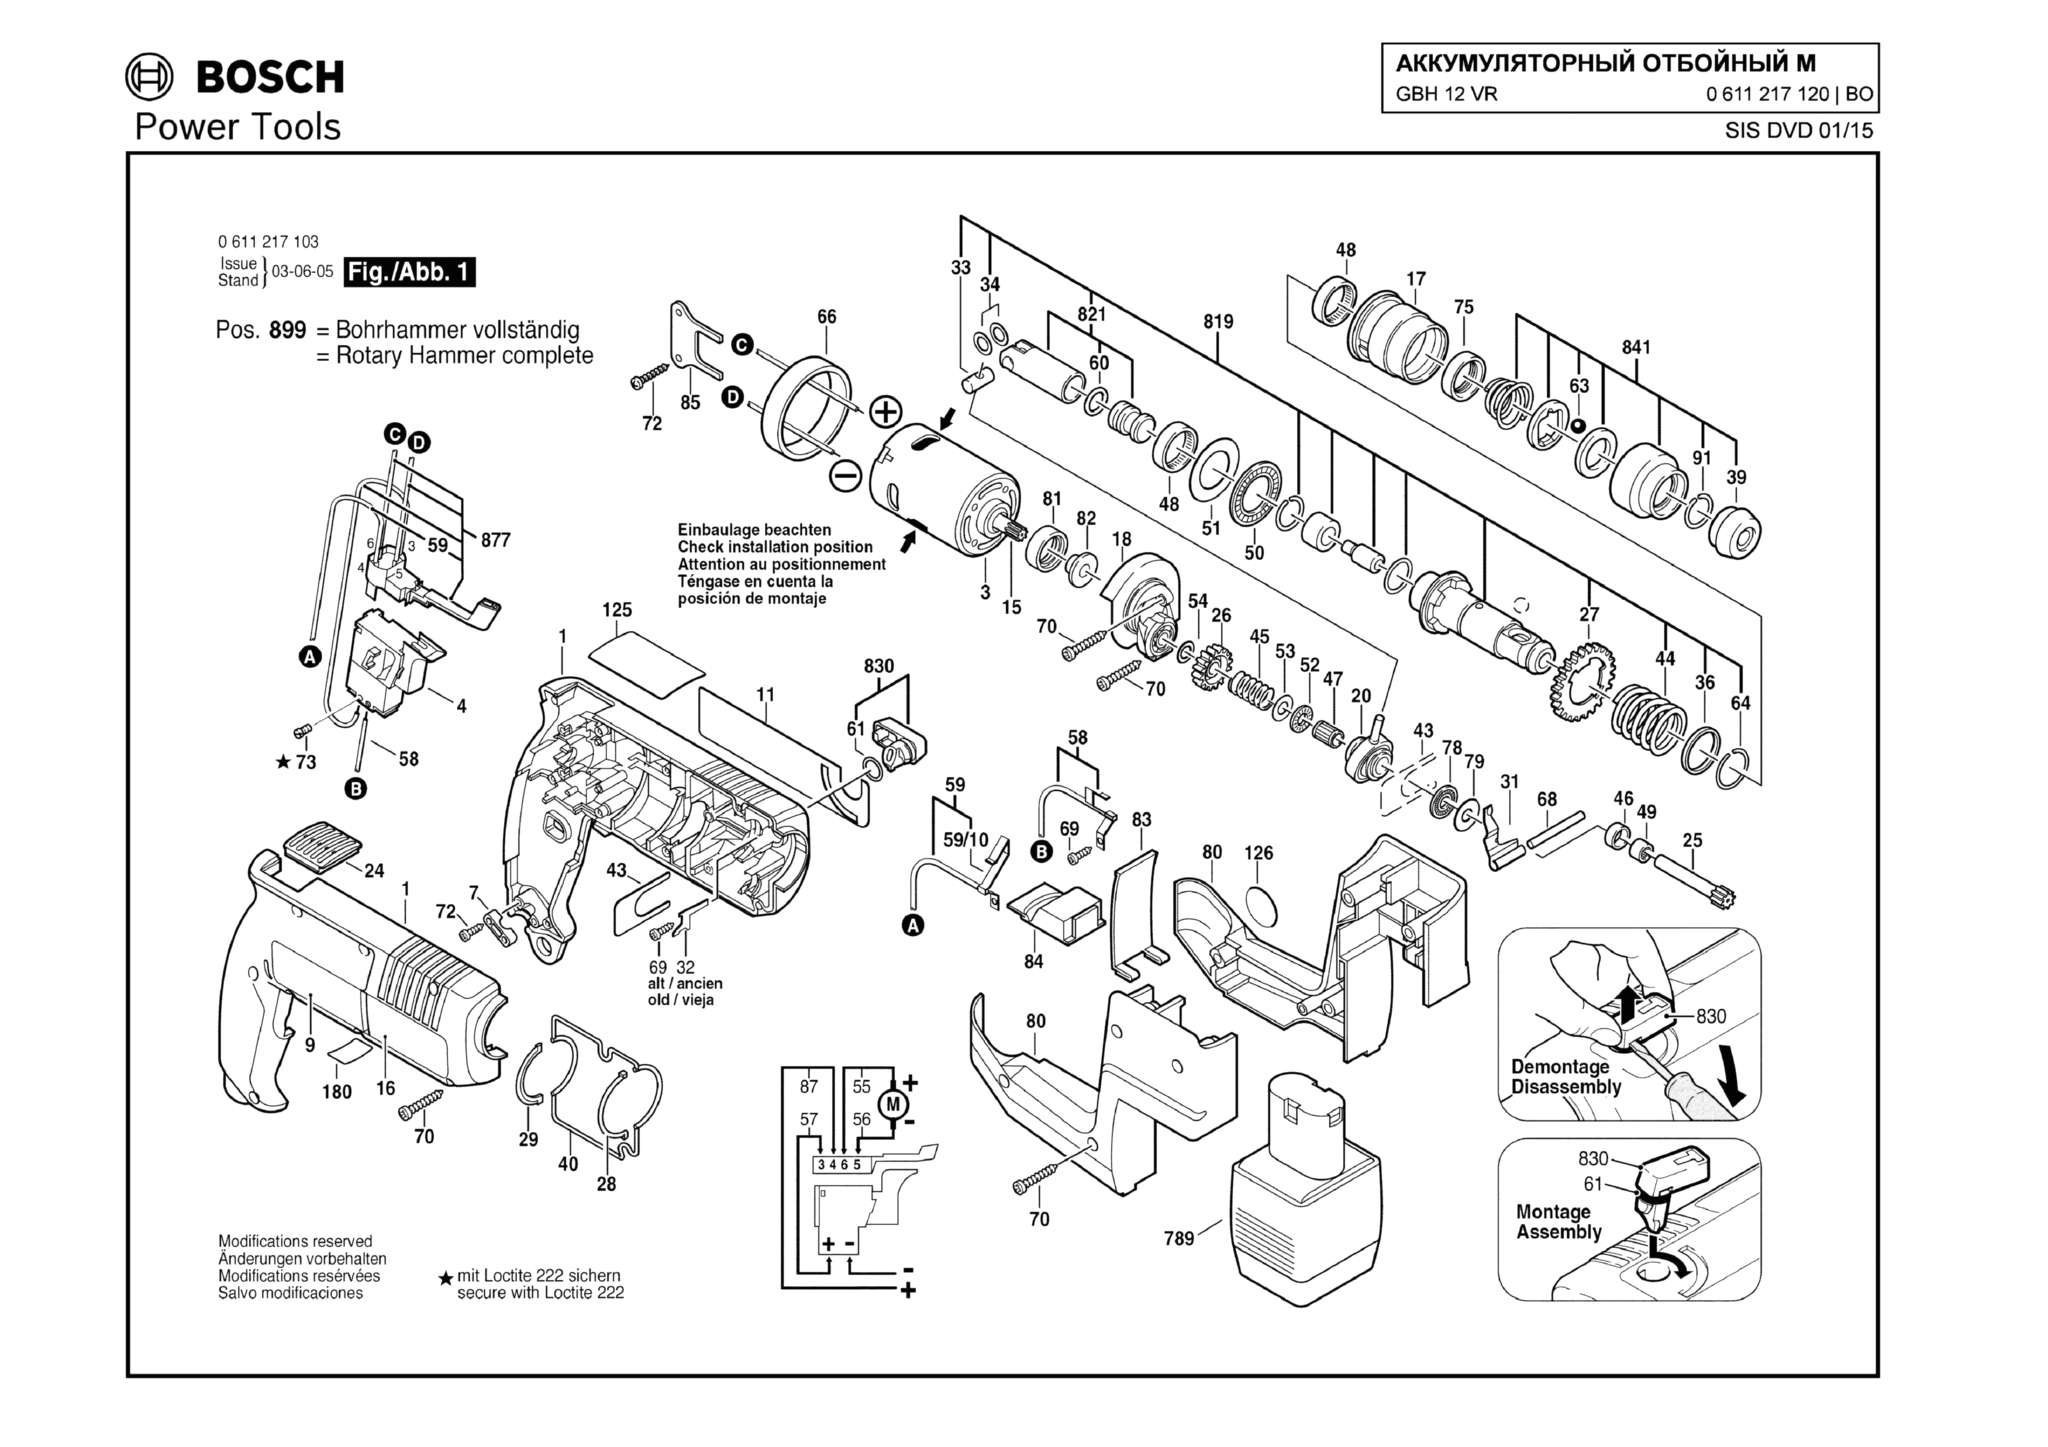 Запчасти, схема и деталировка Bosch GBH 12 VR (ТИП 0611217120) (ЧАСТЬ 1)